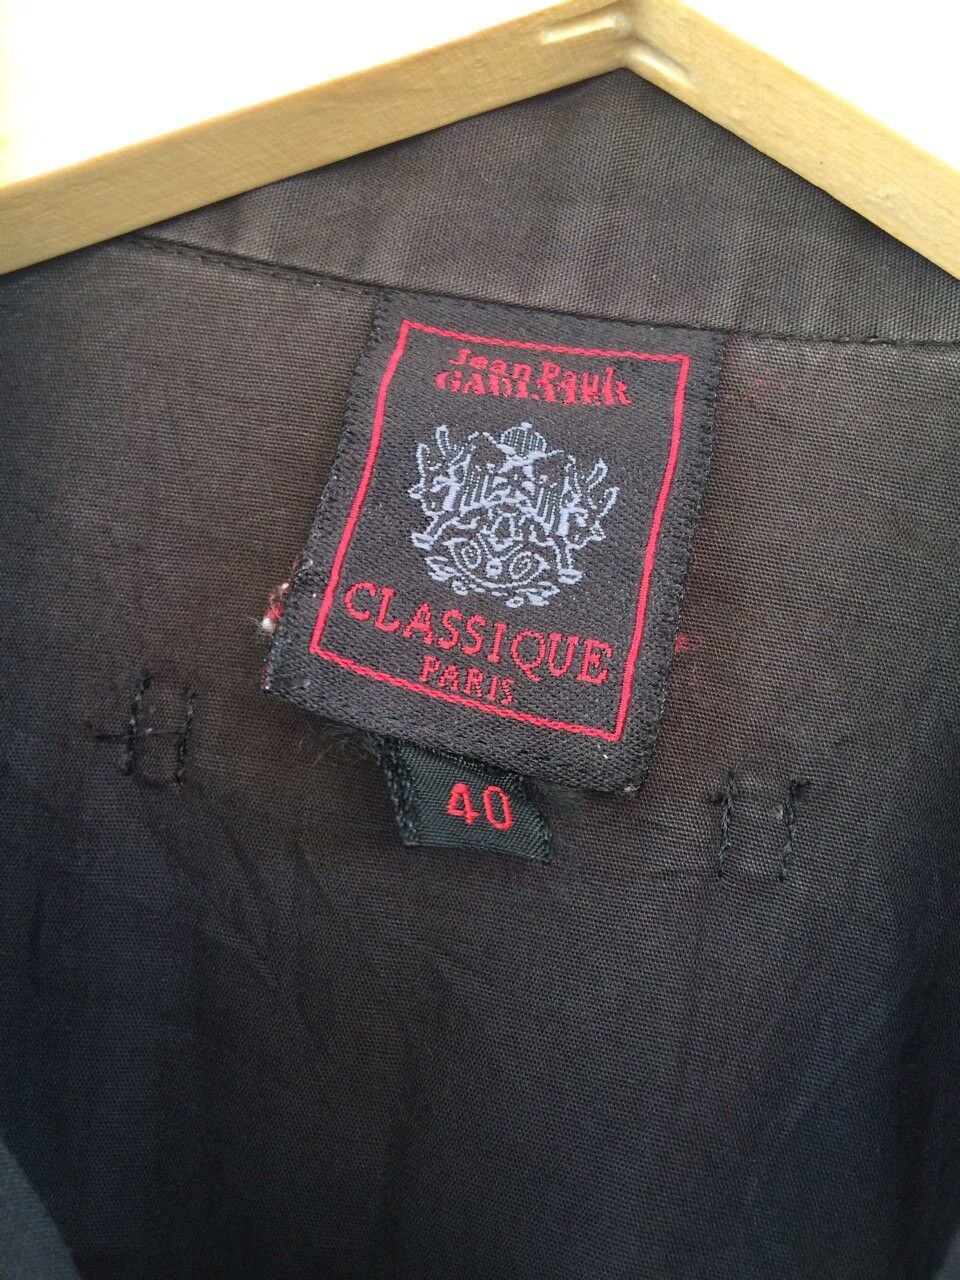 Jean Paul Gaultier Jean Paul Gaultier Classique Black Shirt Size US M / EU 48-50 / 2 - 6 Thumbnail